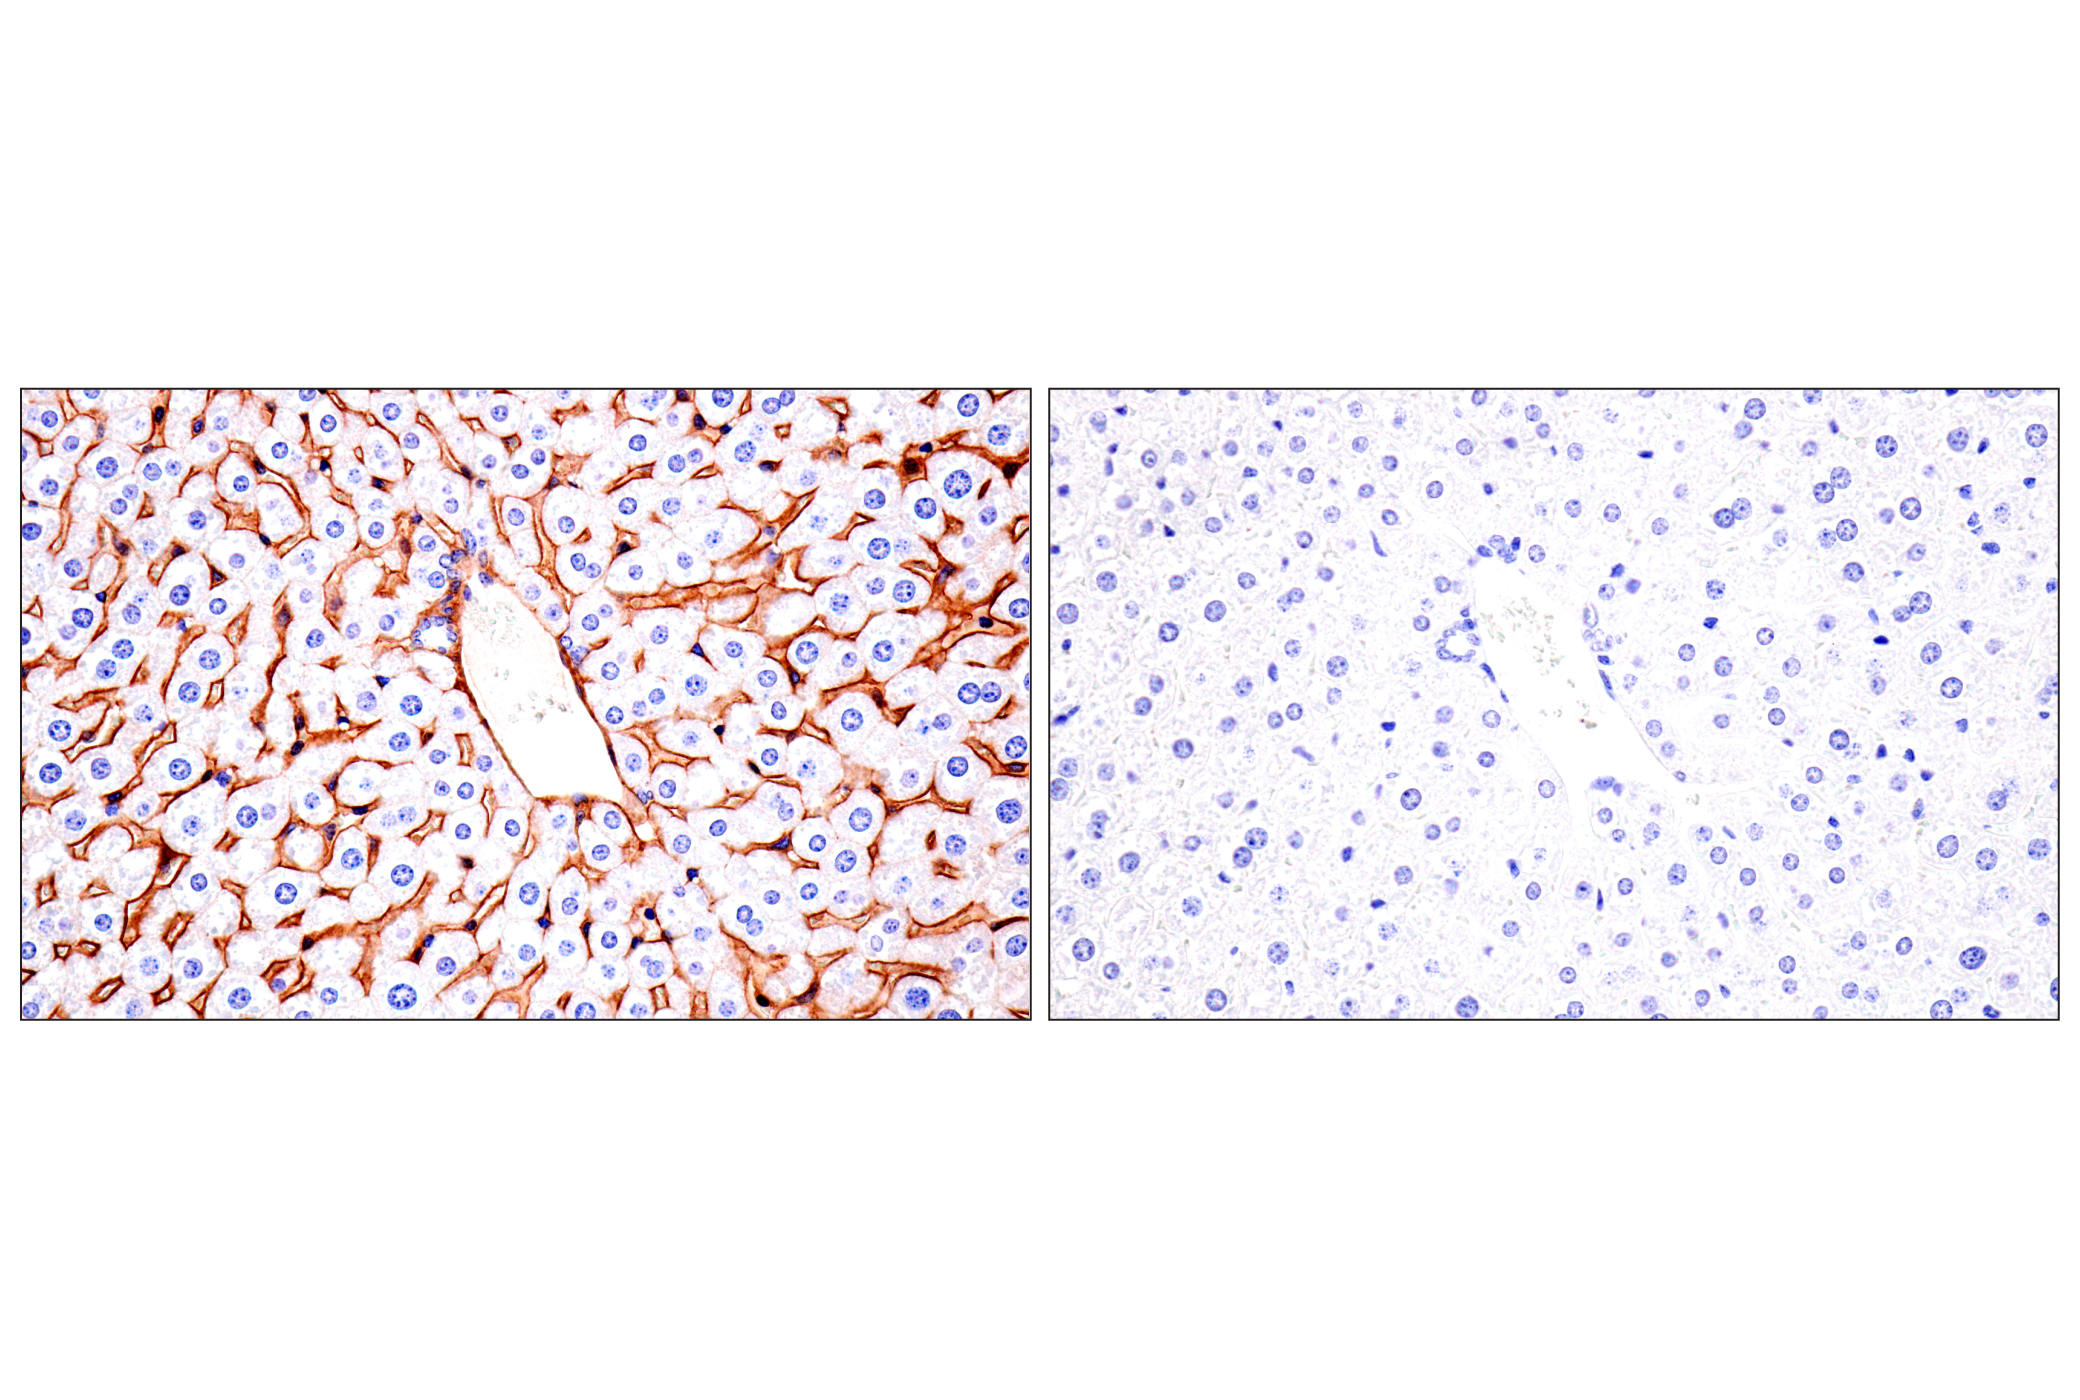  Image 38: Mouse Reactive Exosome Marker Antibody Sampler Kit